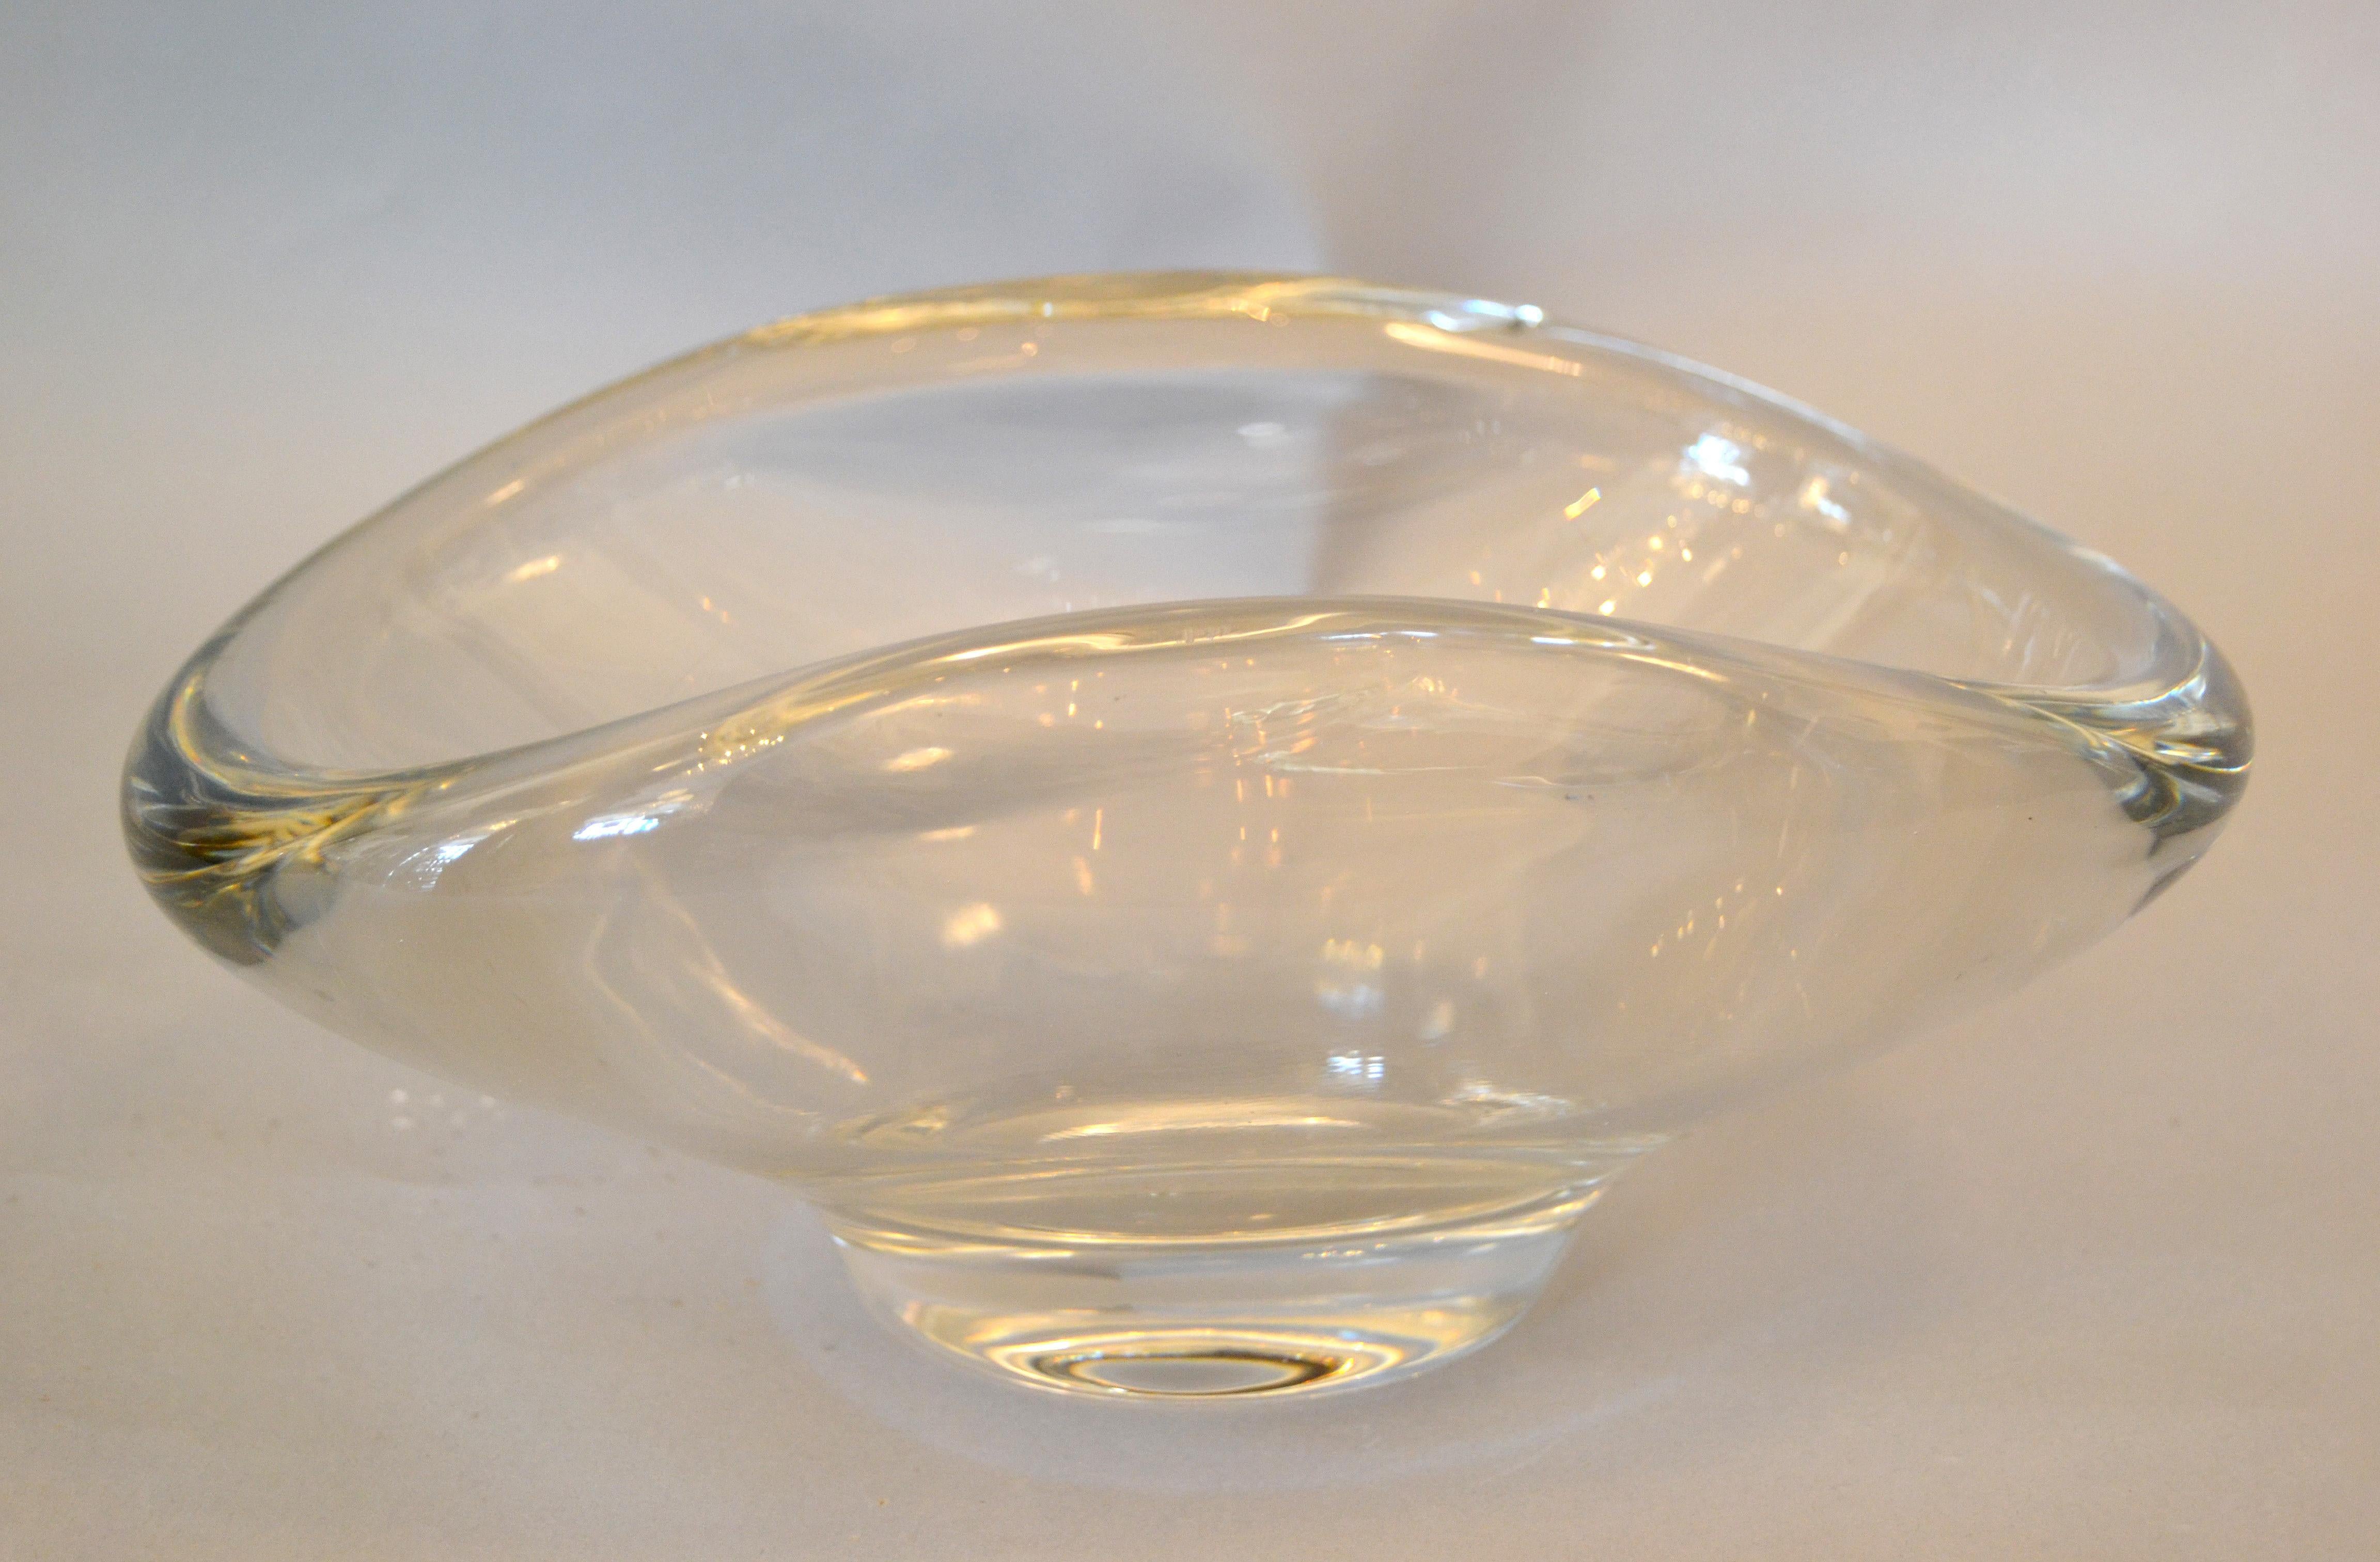 Amerikanische Mid-Century Modern handgeformte Kristallglasschale von Fostoria.
Kann als Schale, Tafelaufsatz oder zum Servieren Ihrer Lieblingssüßigkeiten verwendet werden.
Makers Mark unter der Schale.